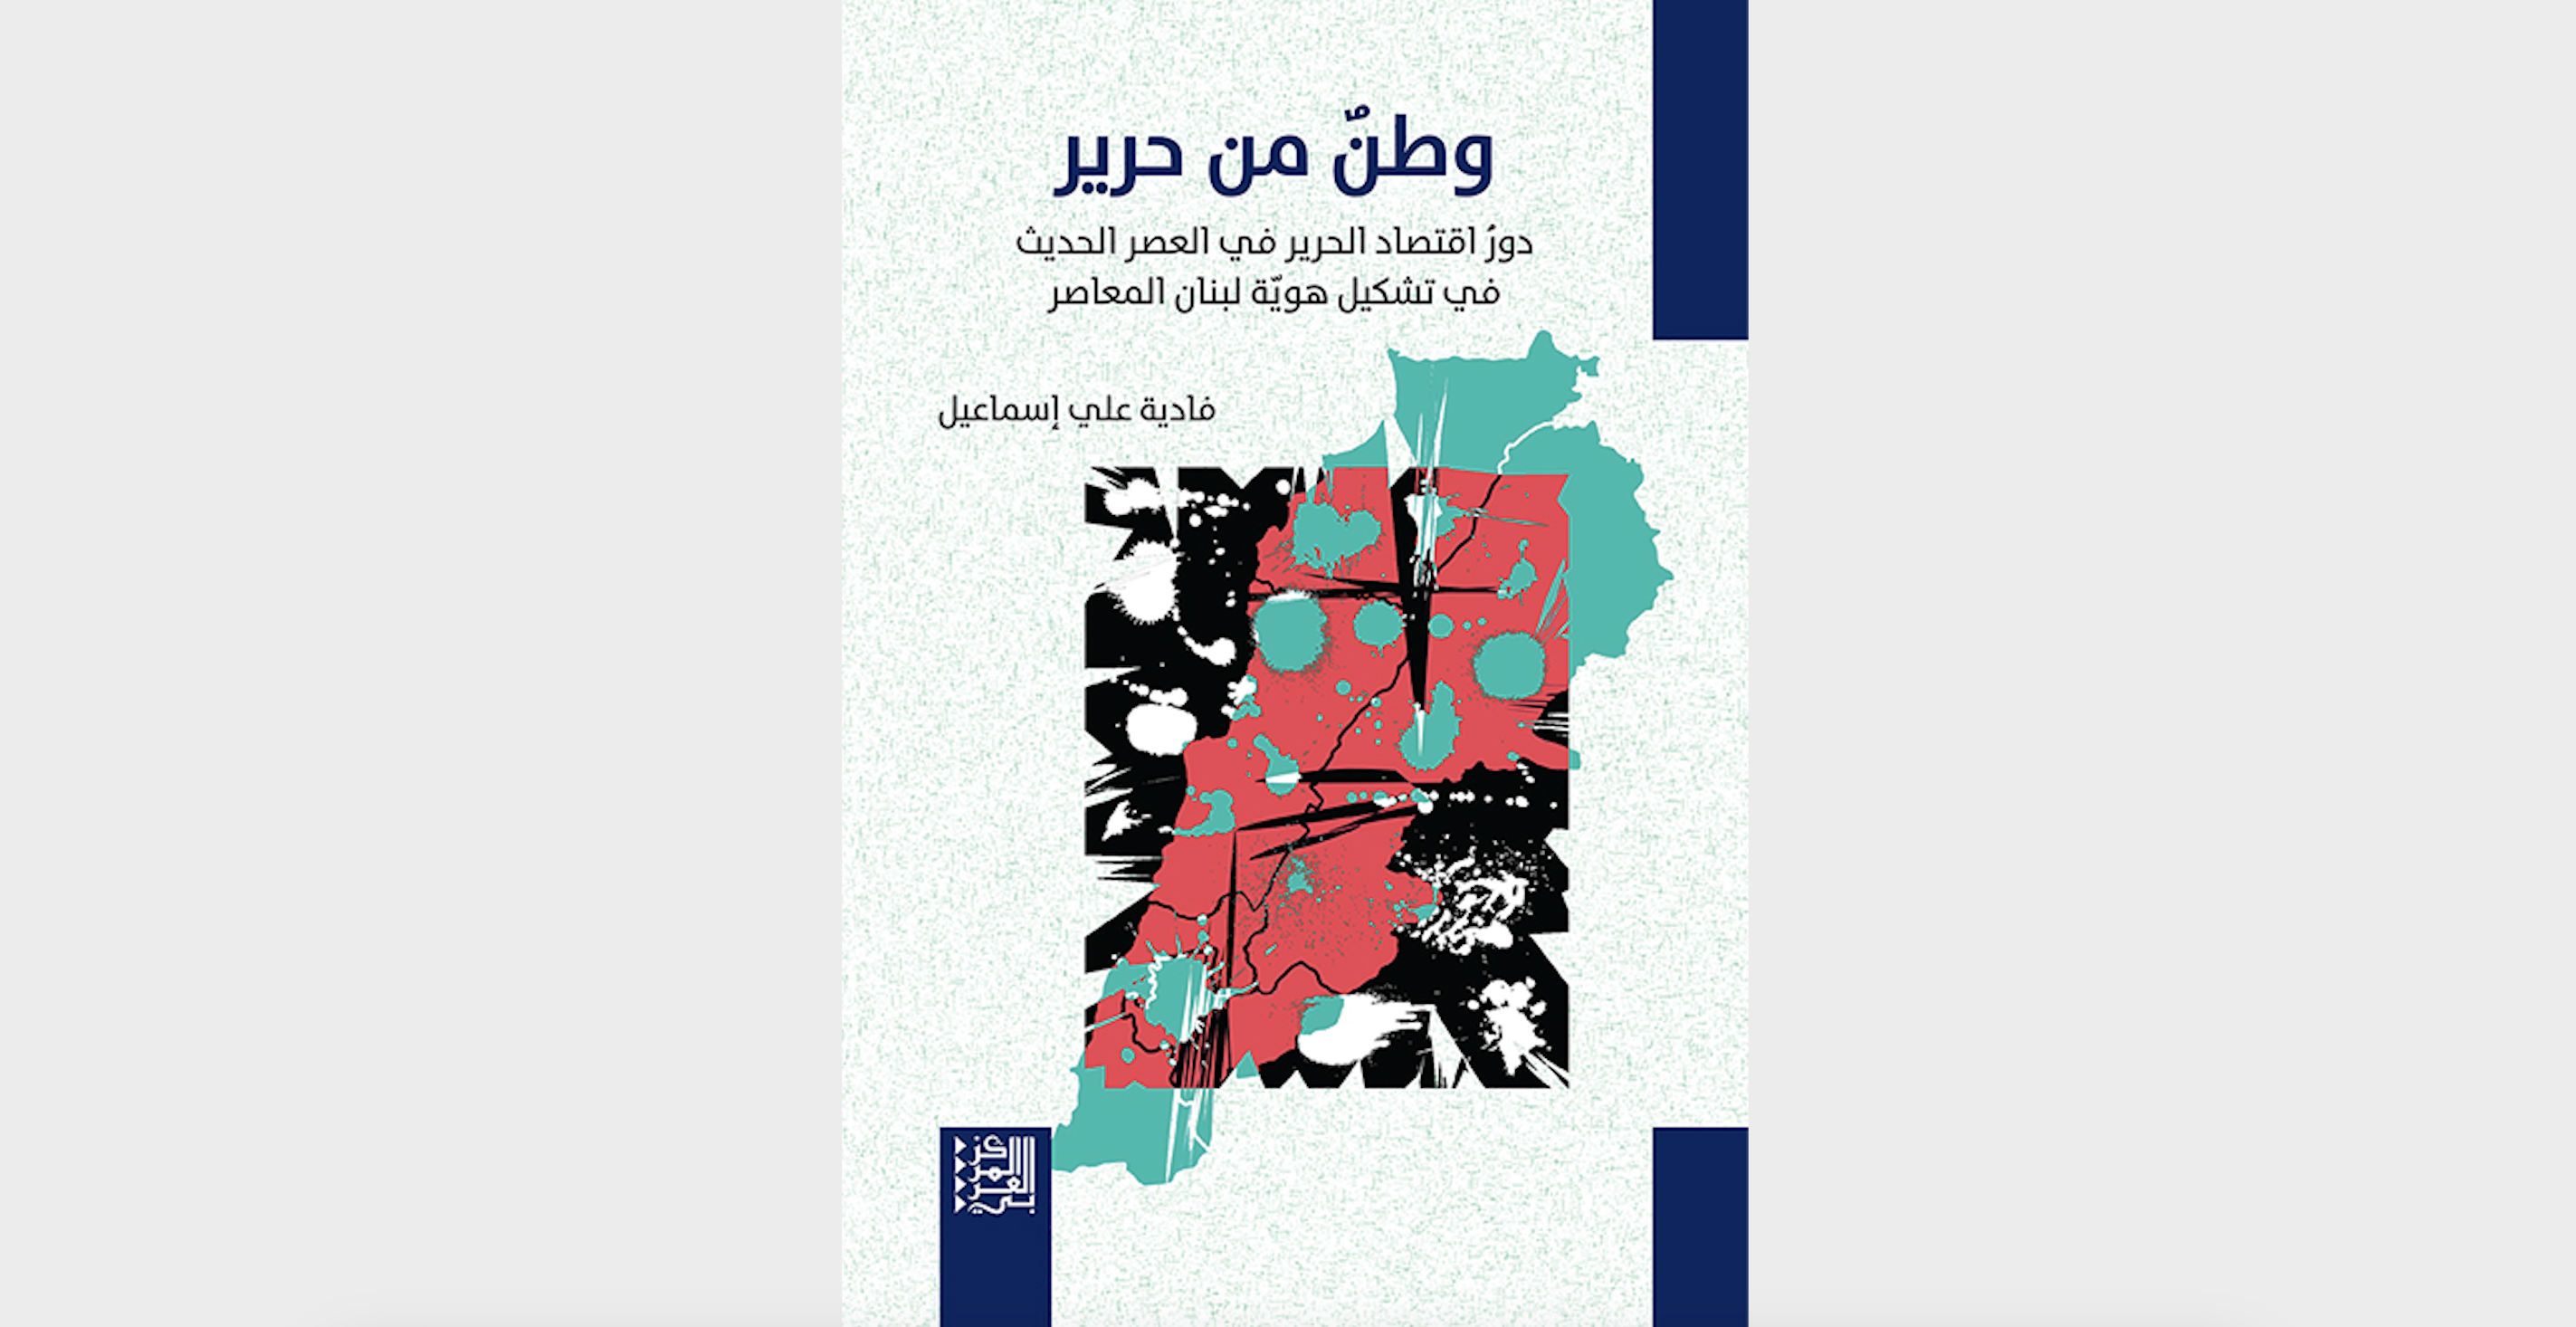 جديد: وطنٌ من حرير: دورُ اقتصاد الحرير في العصر الحديث في تشكيل هويّة لبنان المعاصر